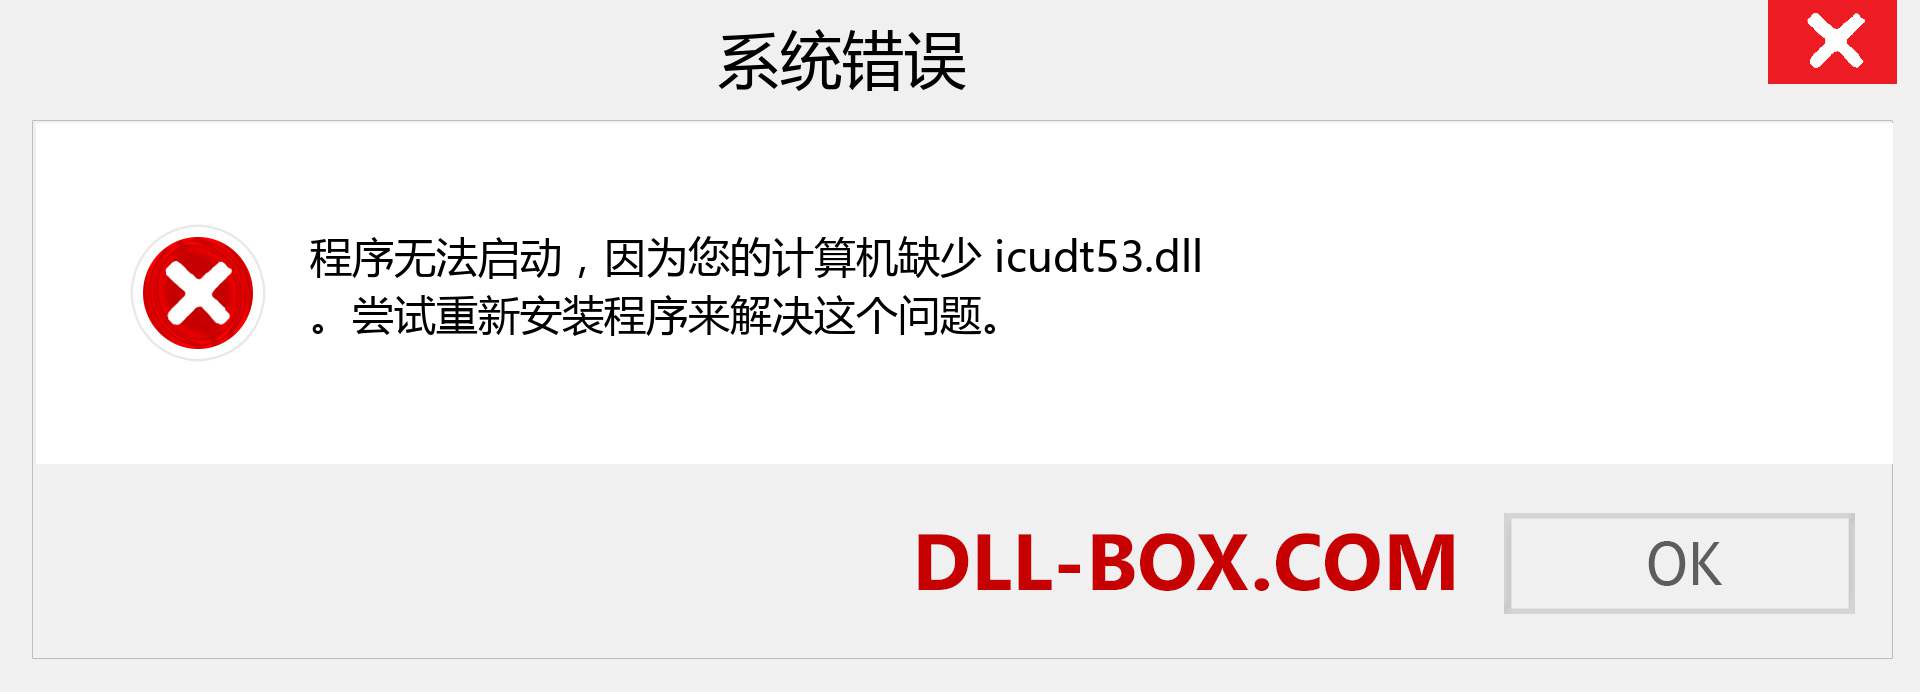 icudt53.dll 文件丢失？。 适用于 Windows 7、8、10 的下载 - 修复 Windows、照片、图像上的 icudt53 dll 丢失错误